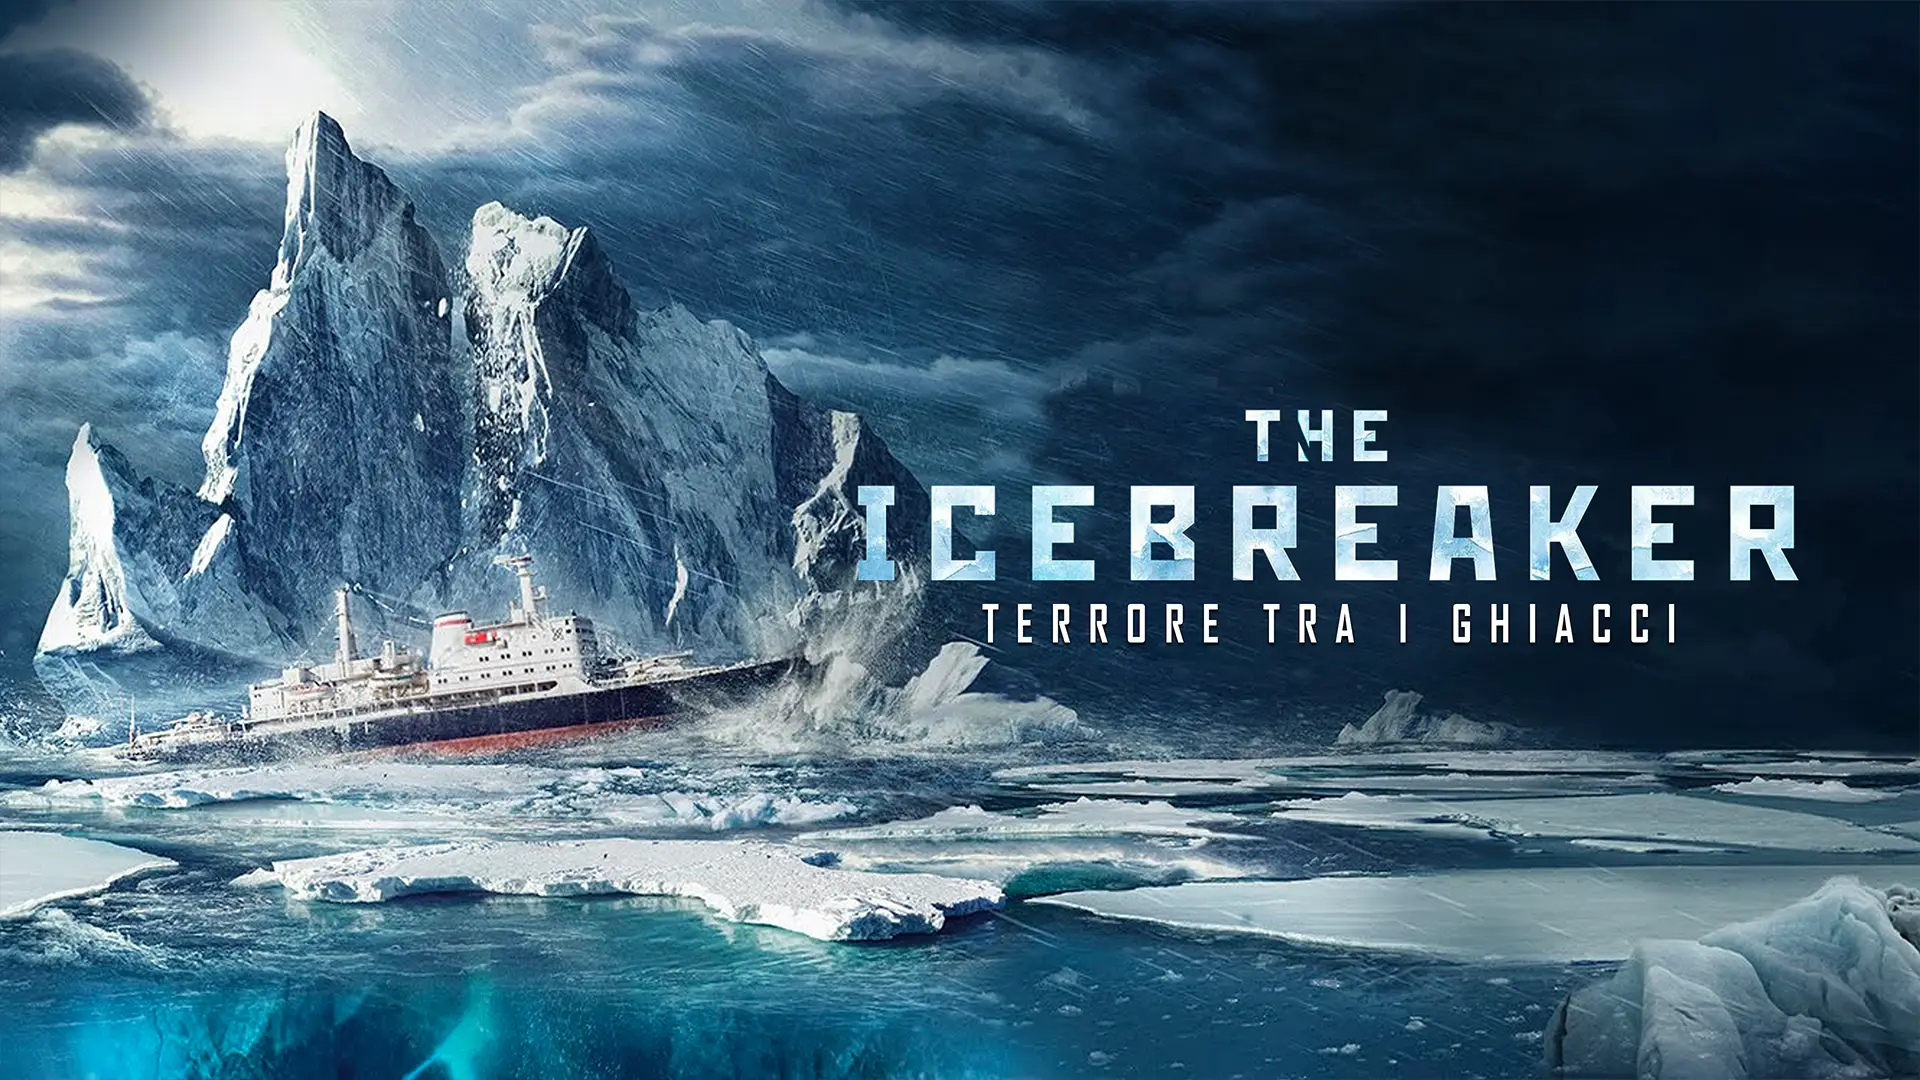 The Icebreaker Terrore tra i ghiacci film Cielo